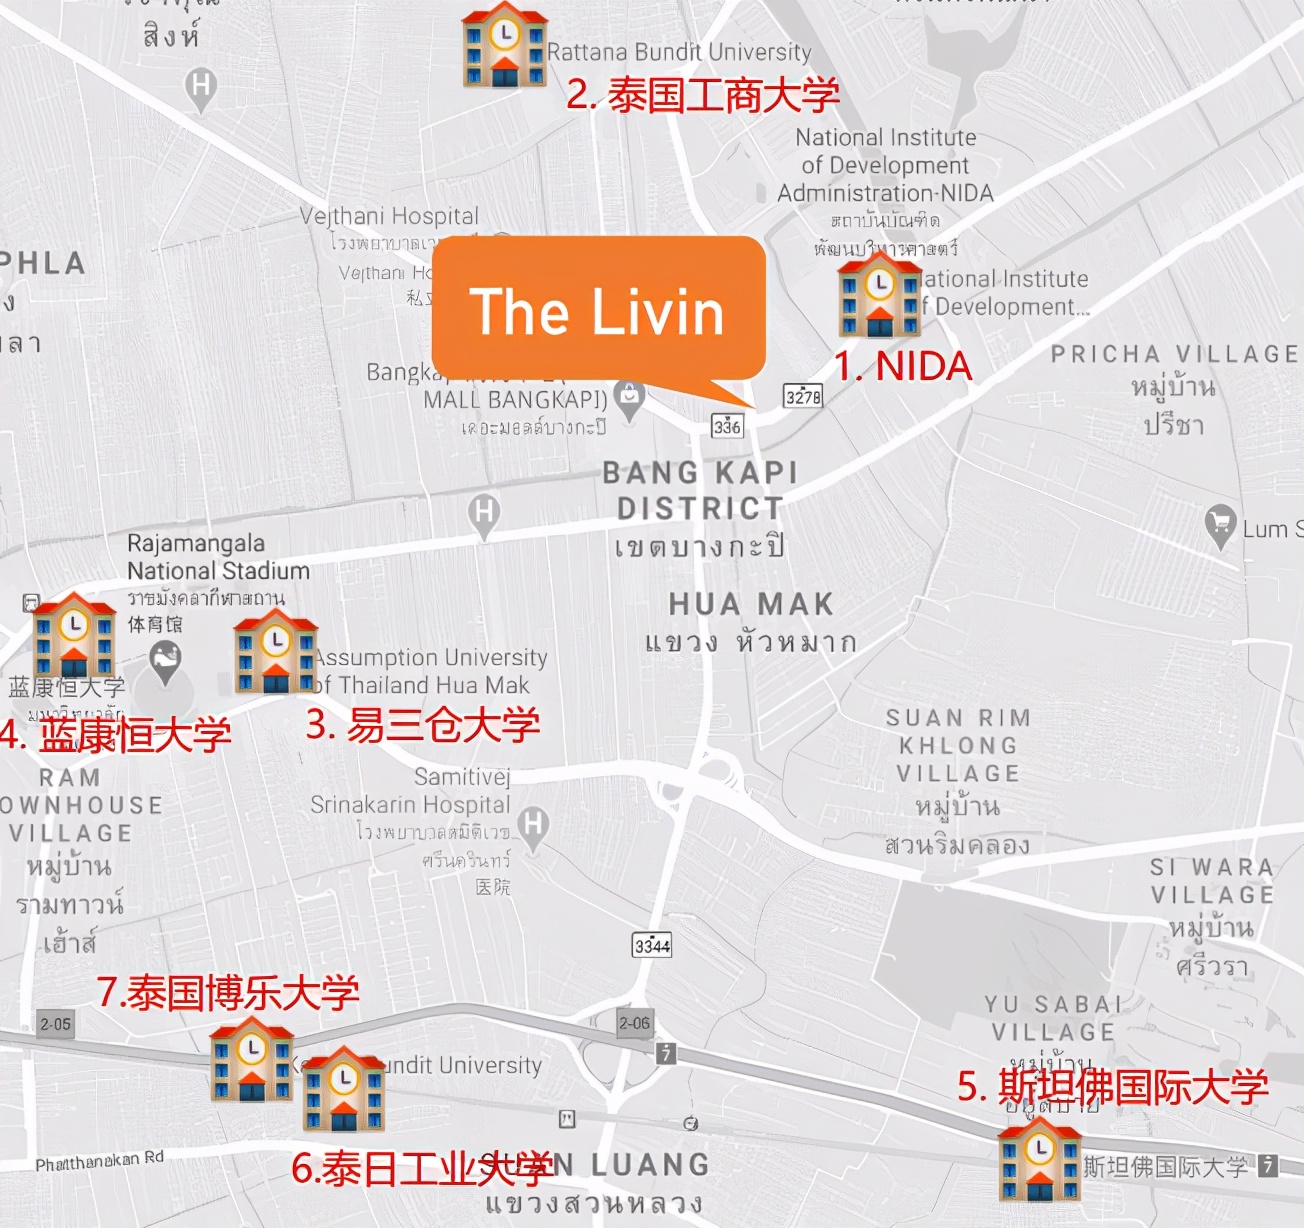 泰国曼谷唯一三轨交汇大学城投资公寓丨蓝康恒大学里 The Livin Ram